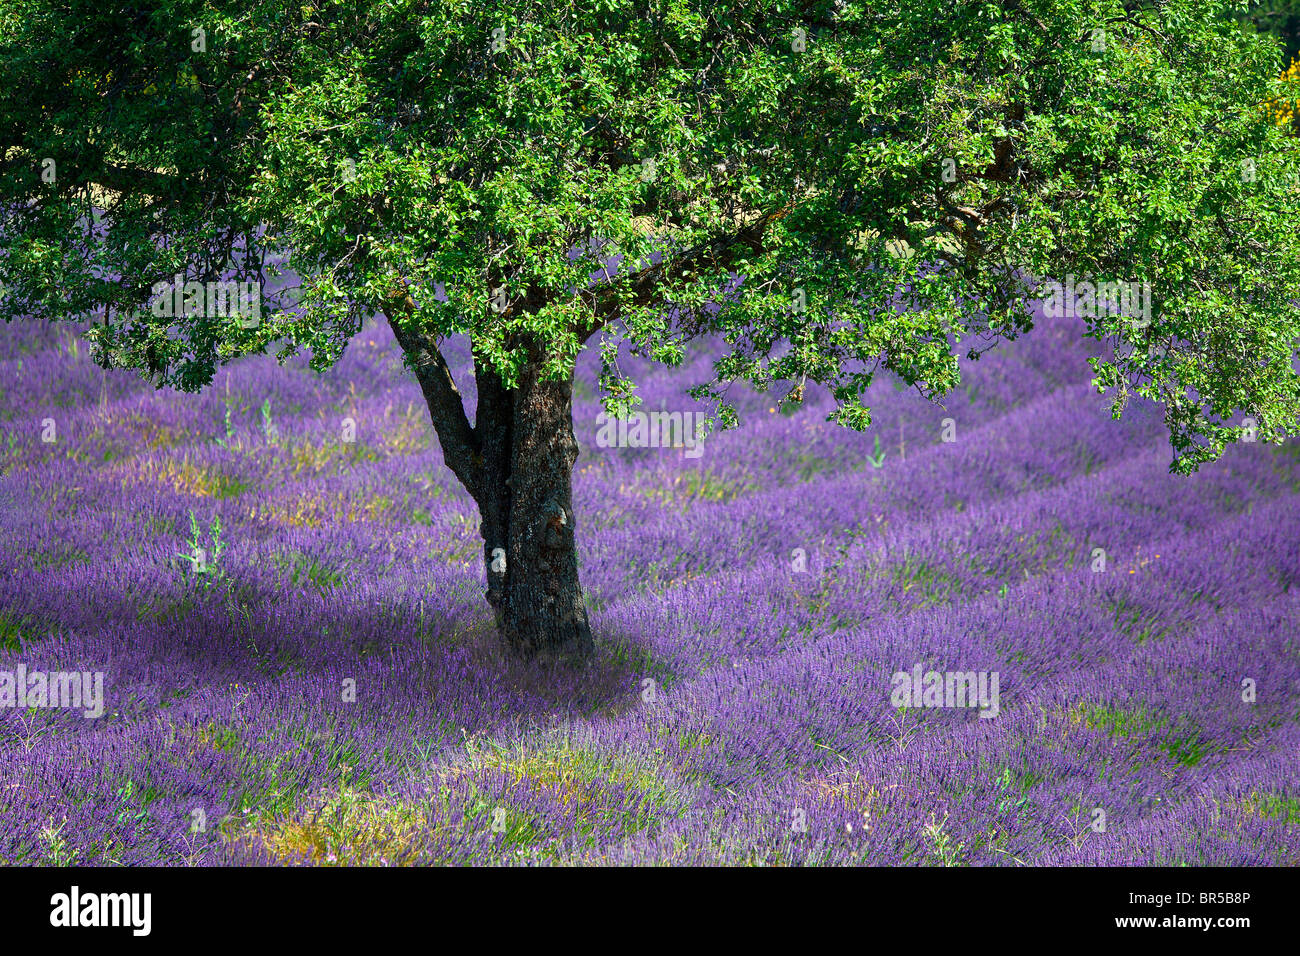 Europa, Frankreich, Vaucluse (84), Baum in einem Lavendelfeld Stockfoto